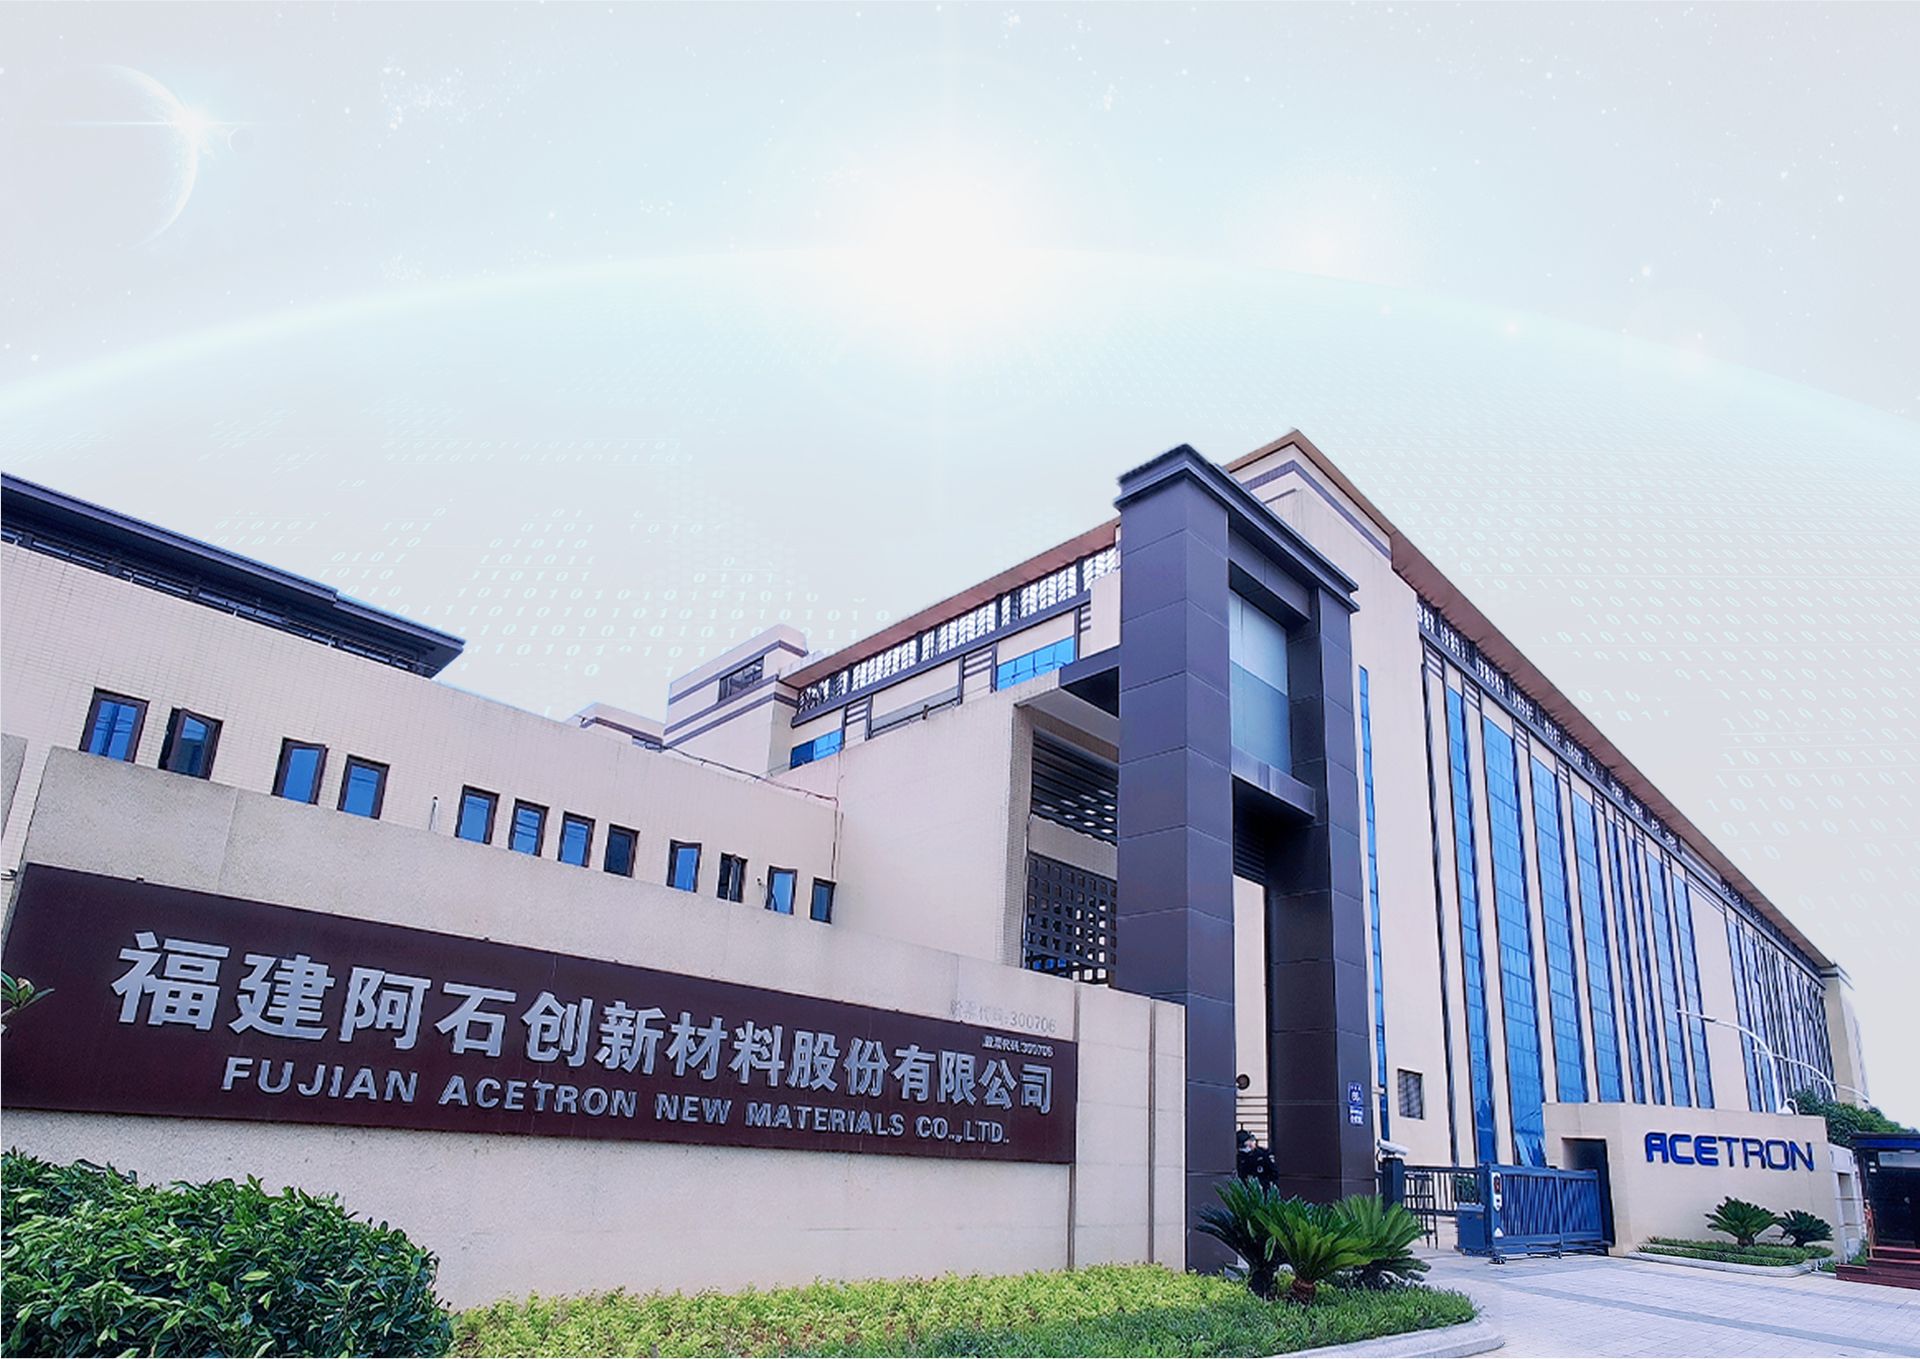 Fujian Acetron New Materials Co., Ltd.